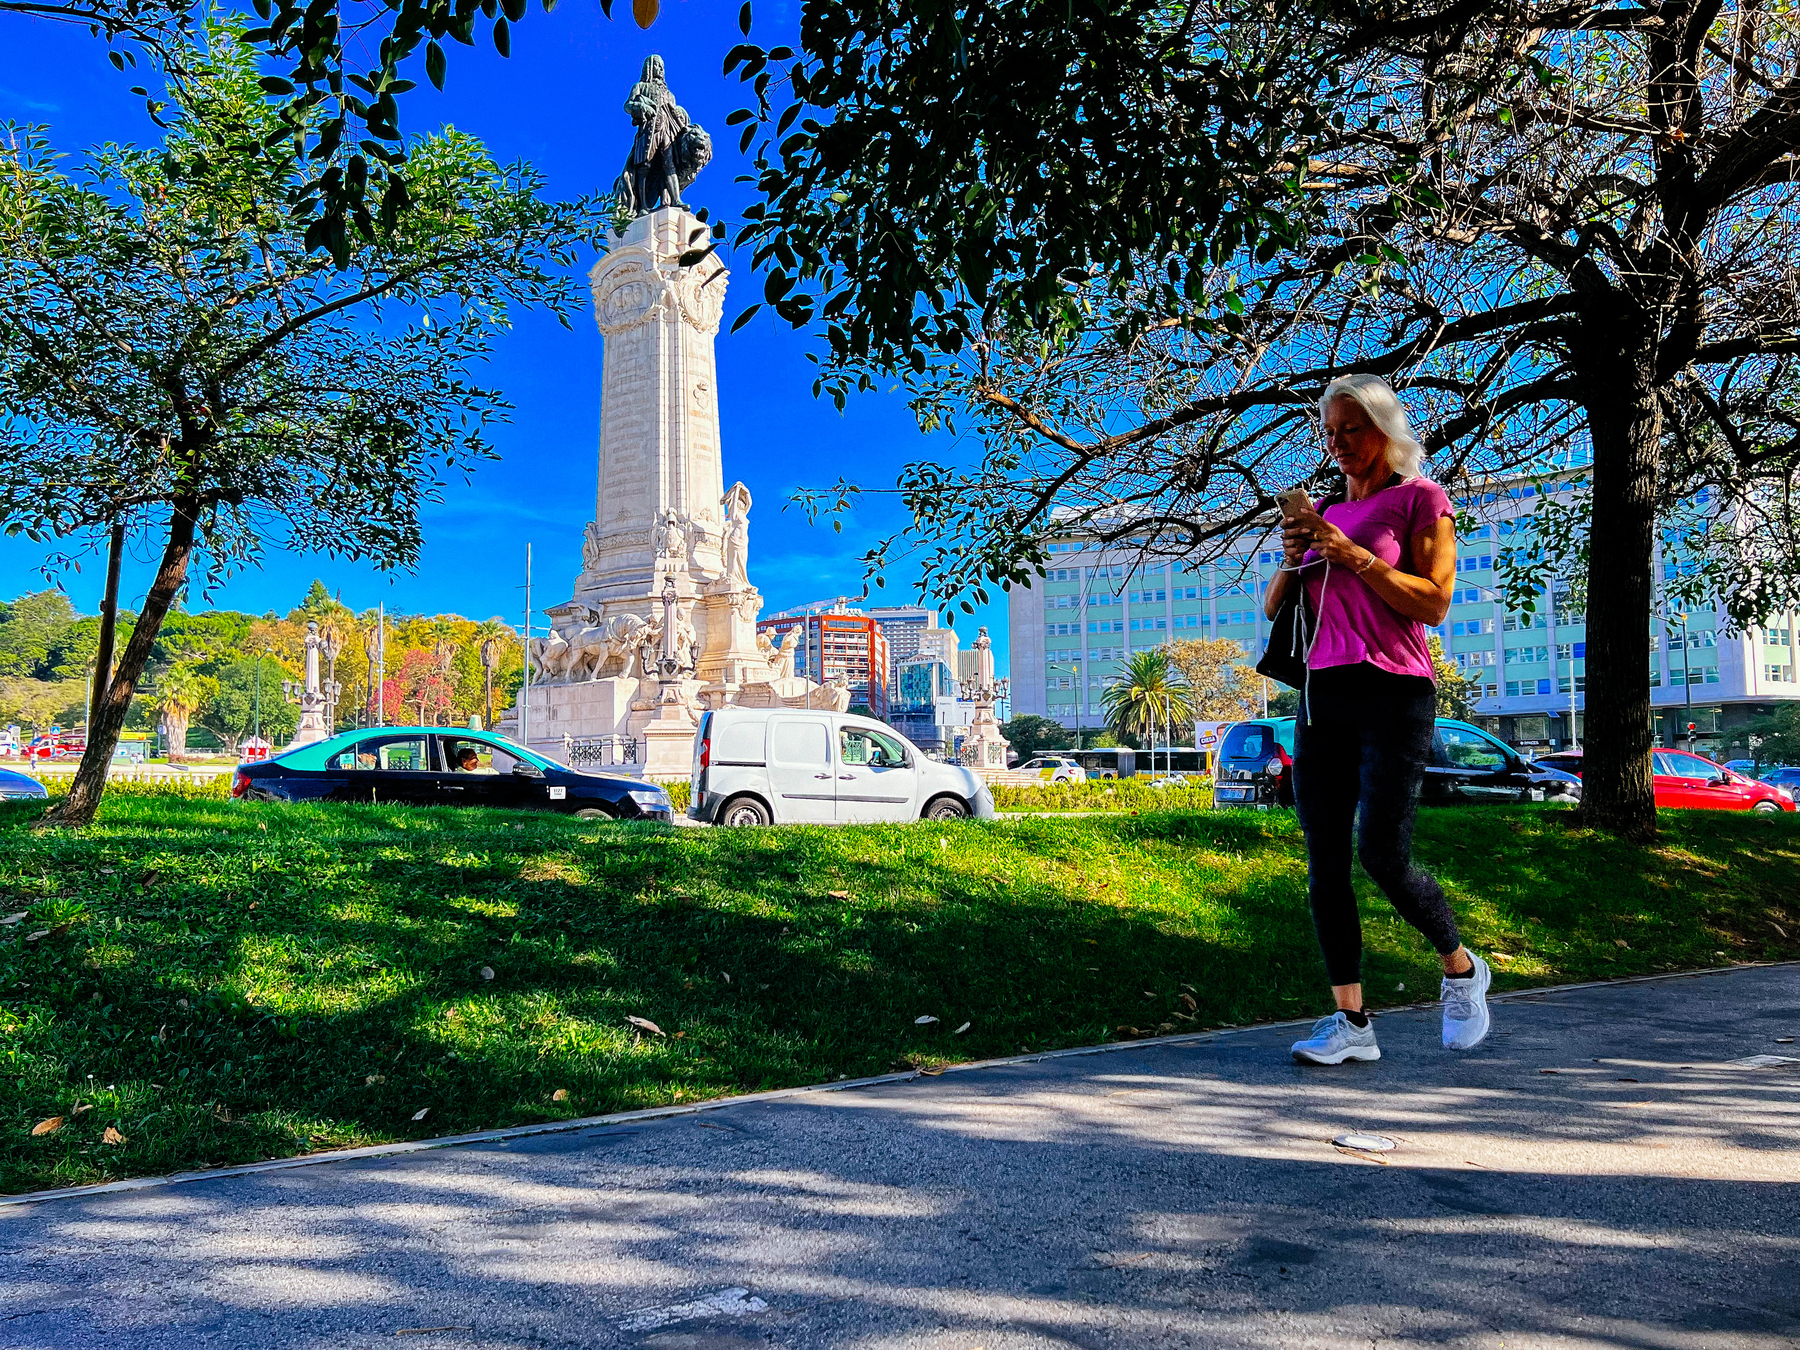 A woman walks on a bike path, close to a huge statue